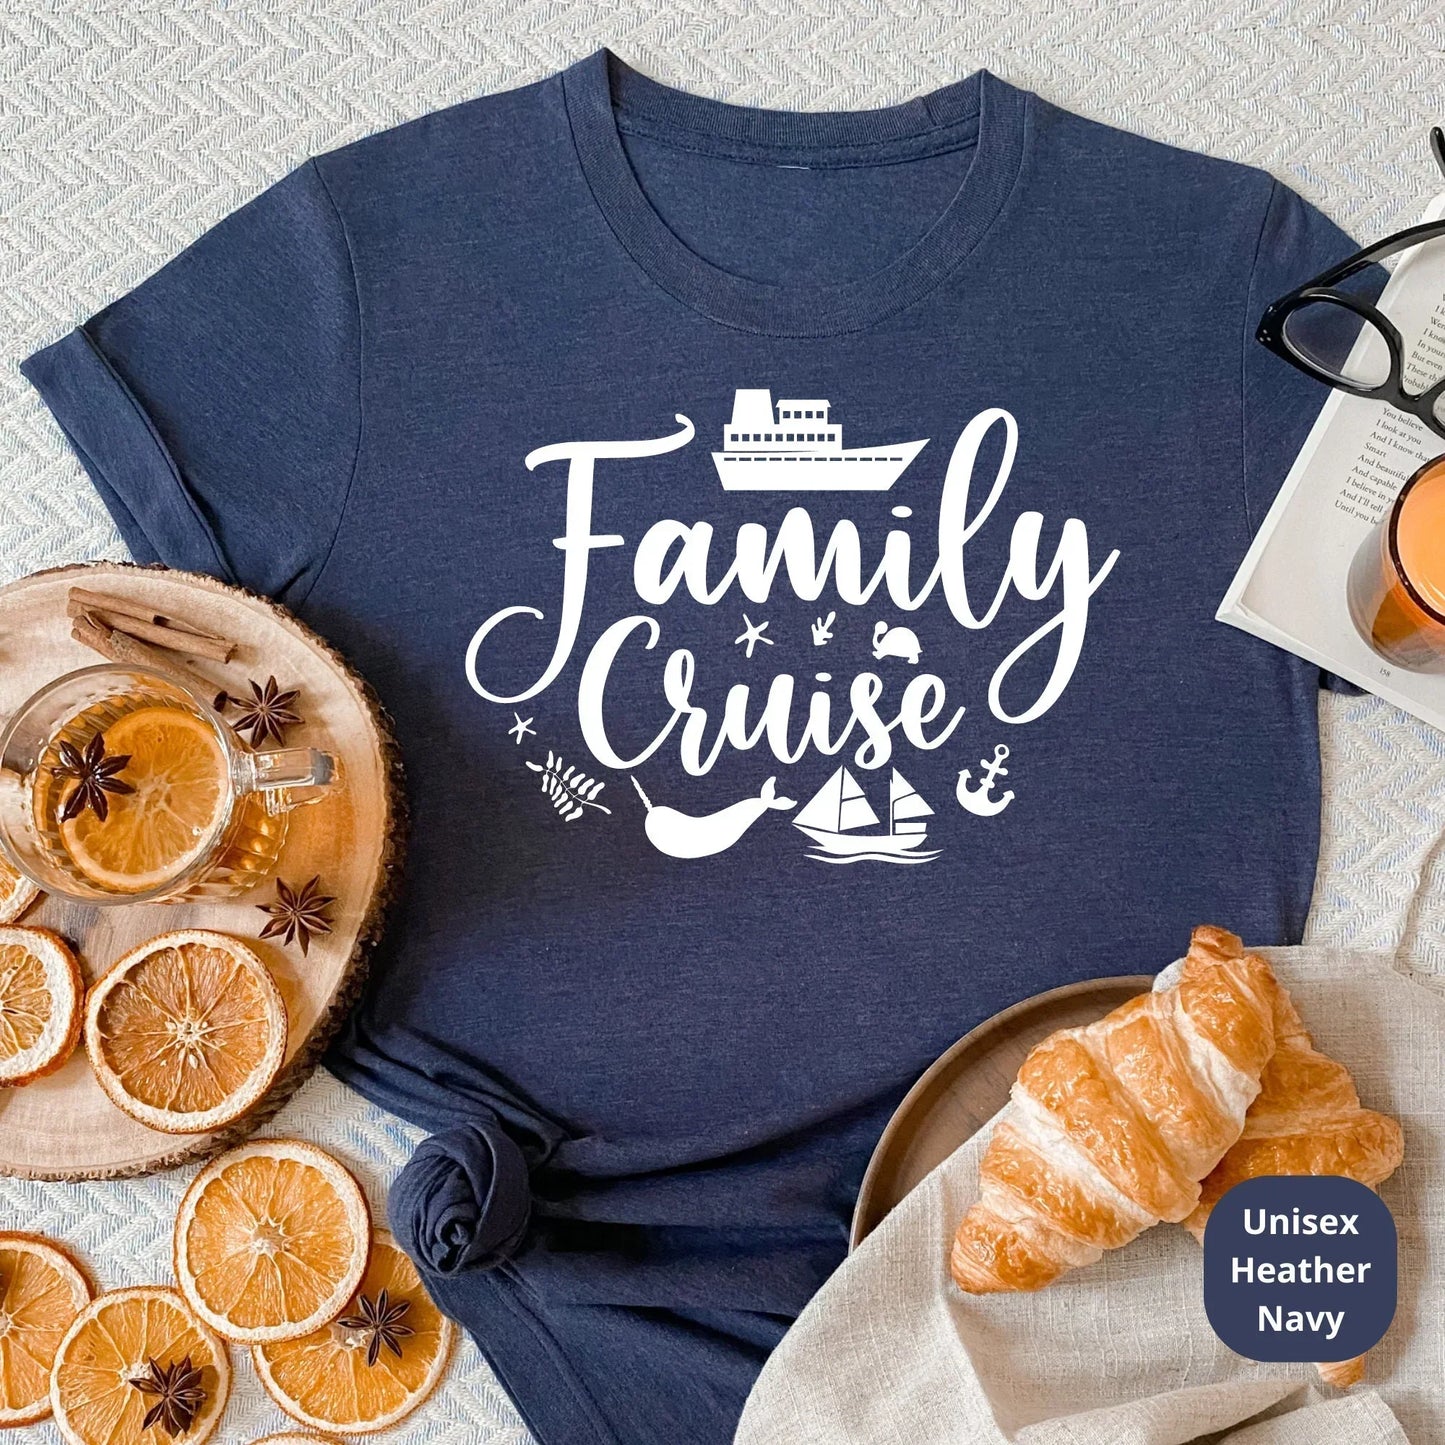 Family Cruise Shirts